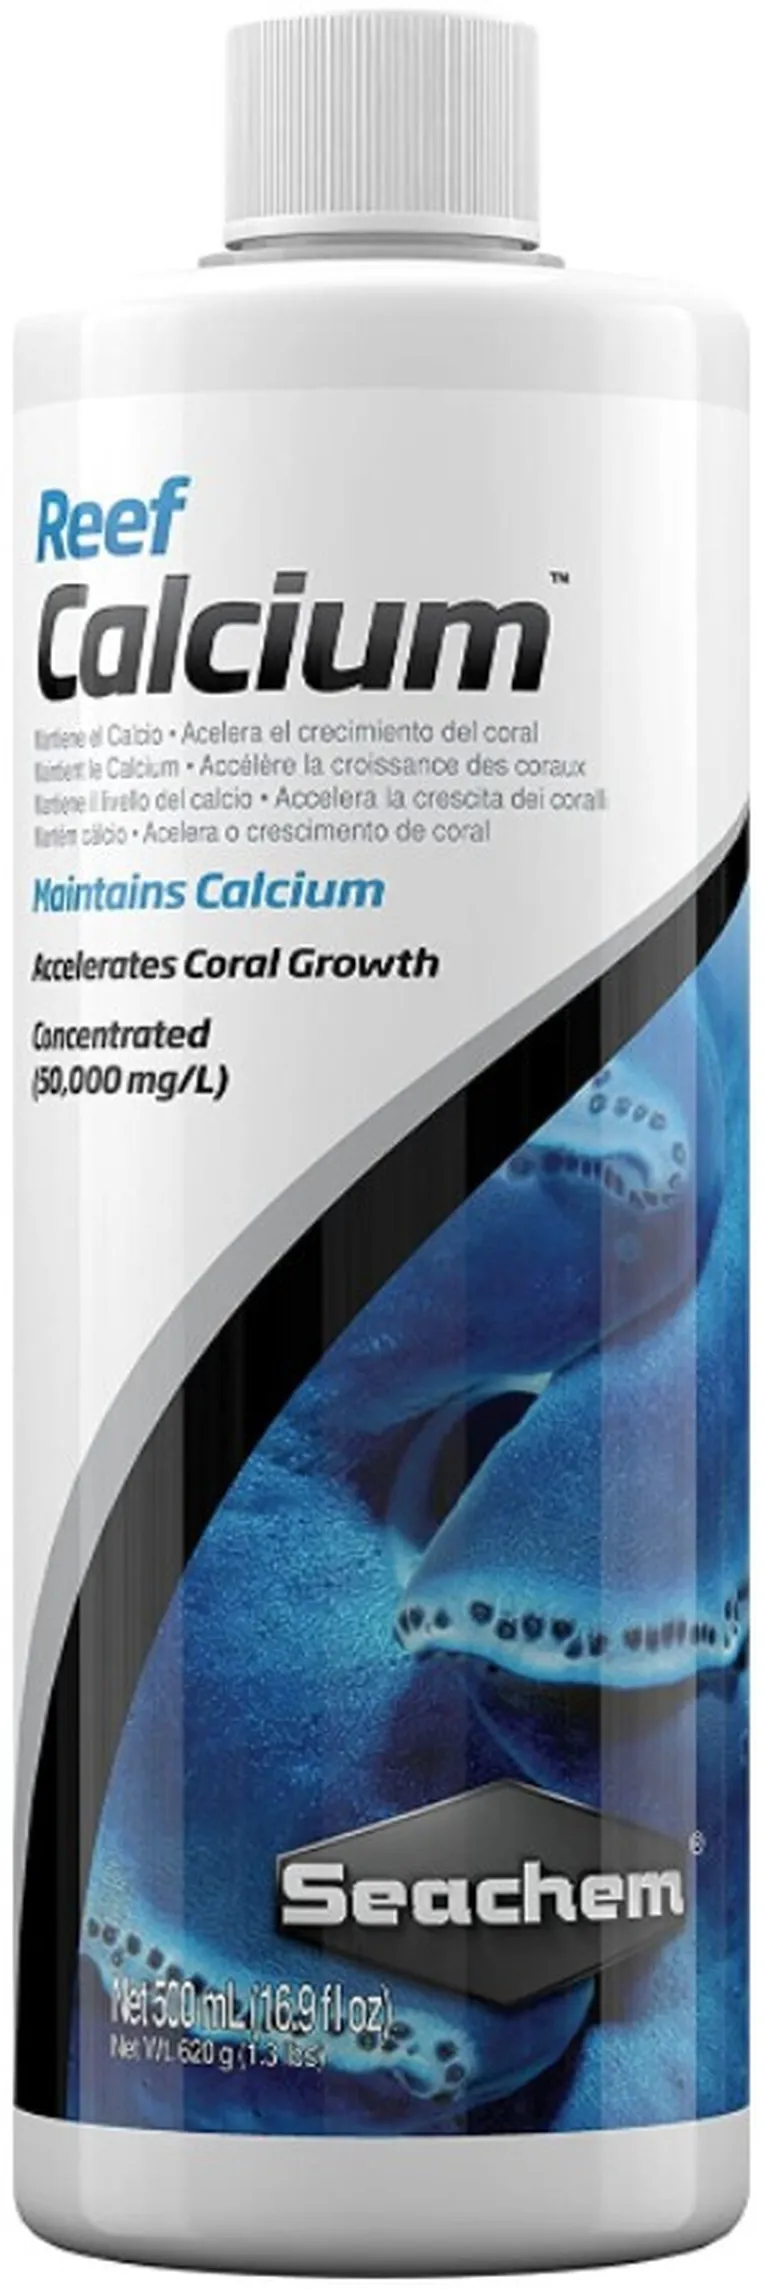 Seachem Reef Calcium Maintains Calcium and Accelerates Coral Groth in Aquariums Photo 1